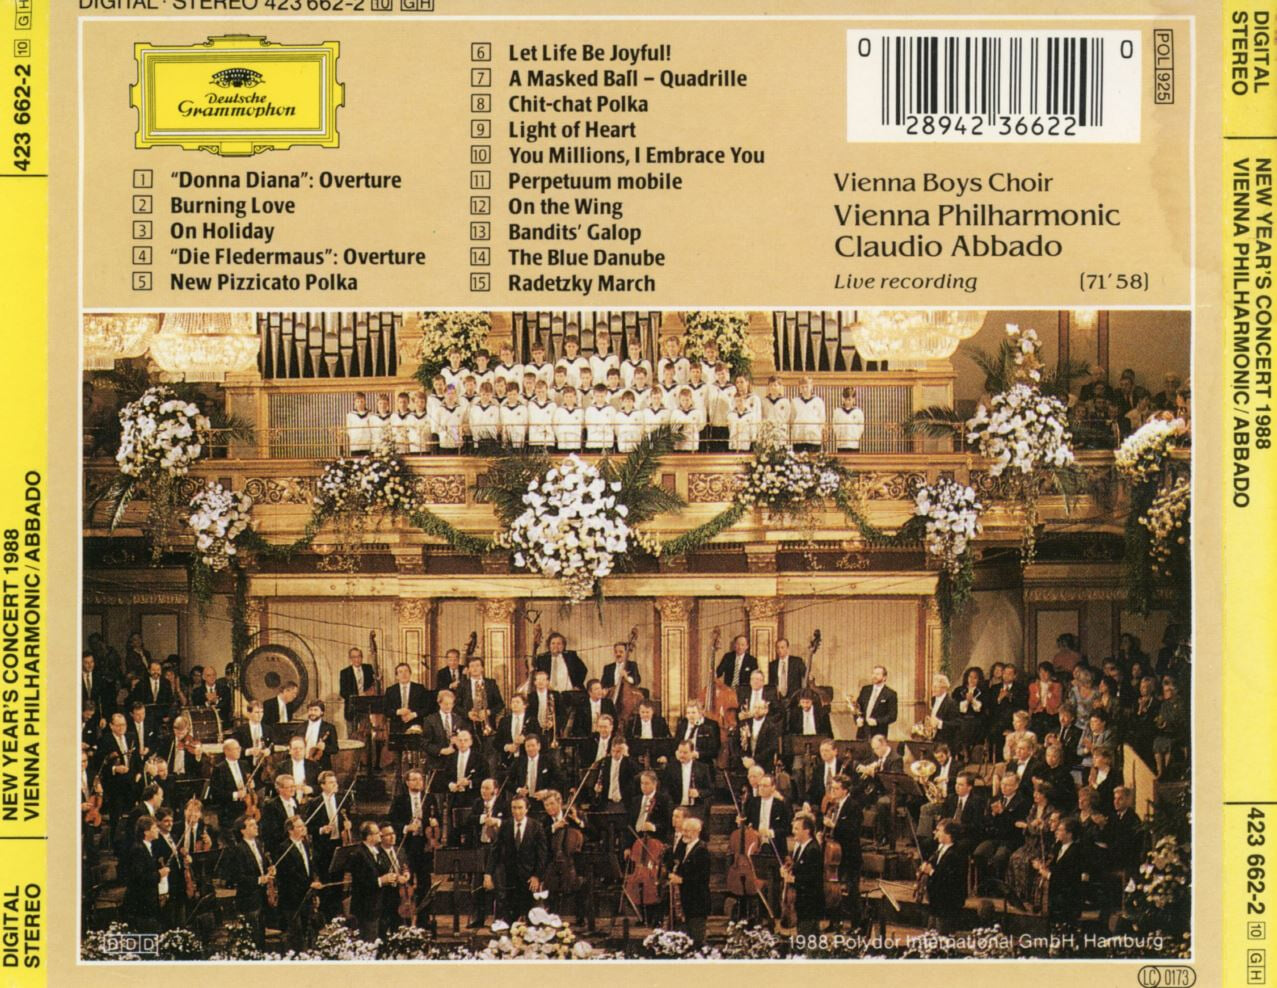 클라우디오 아바도 - Claudio Abbado - Neujahrskonzert 1988 [독일발매]